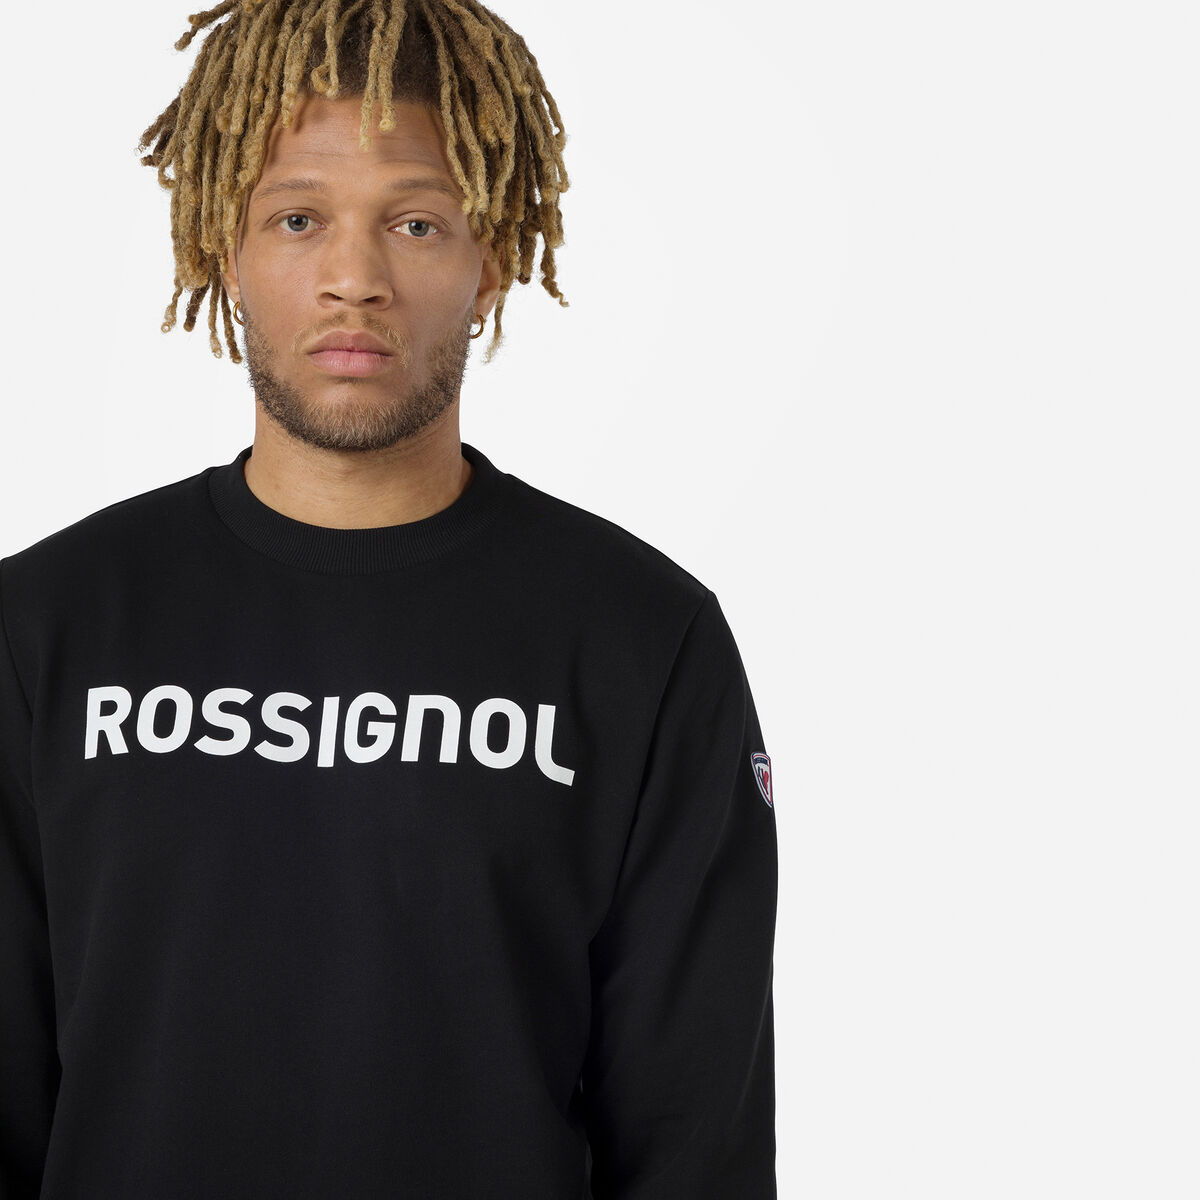 Rossignol Men's logo cotton sweatshirt round neck black